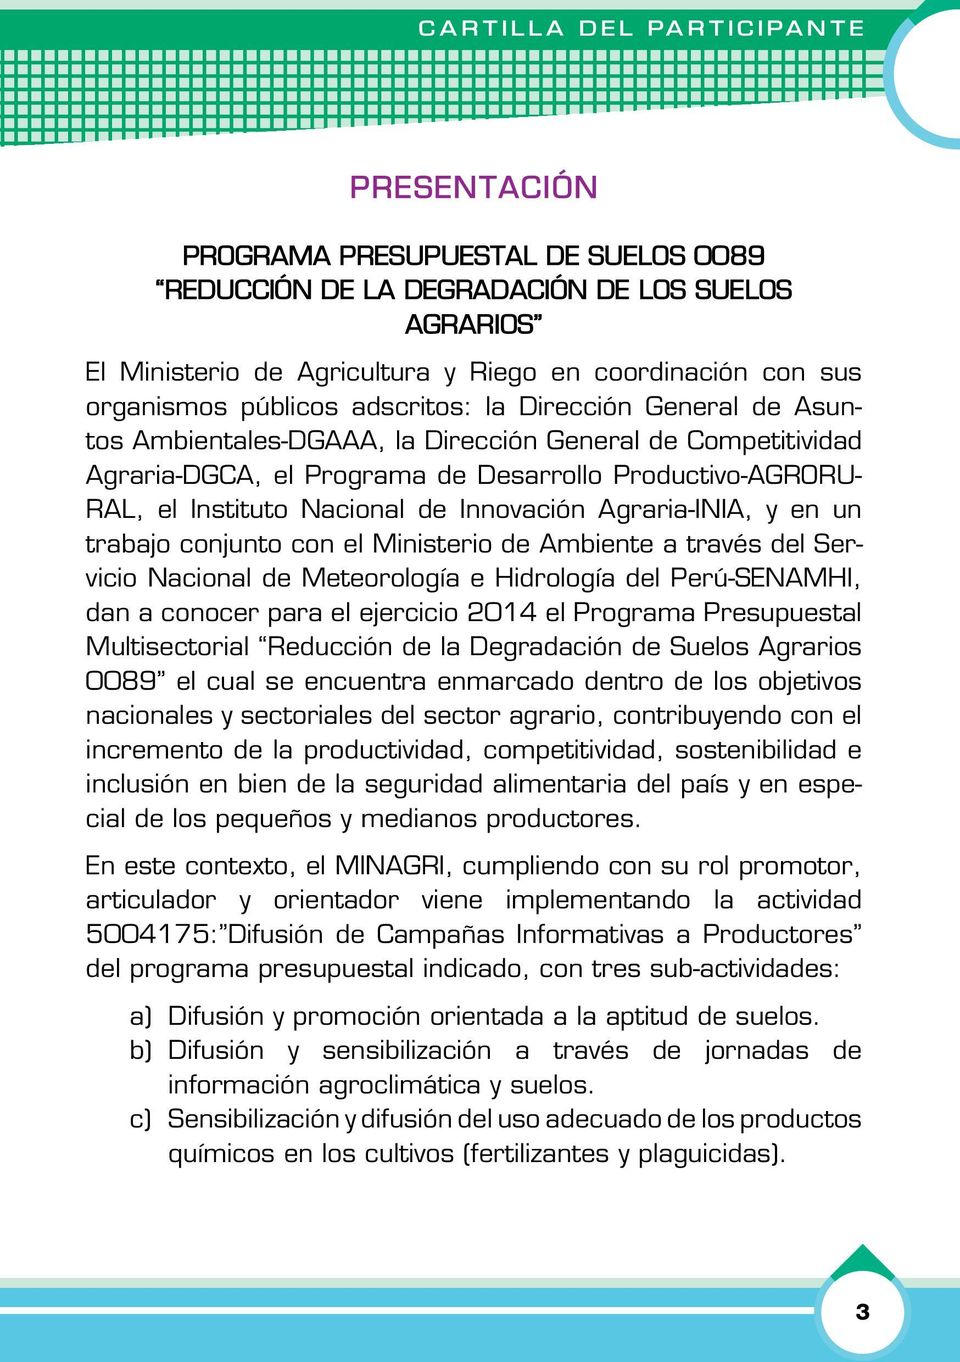 Instituto Nacional de Innovación Agraria-INIA, y en un trabajo conjunto con el Ministerio de Ambiente a través del Servicio Nacional de Meteorología e Hidrología del Perú-SENAMHI, dan a conocer para